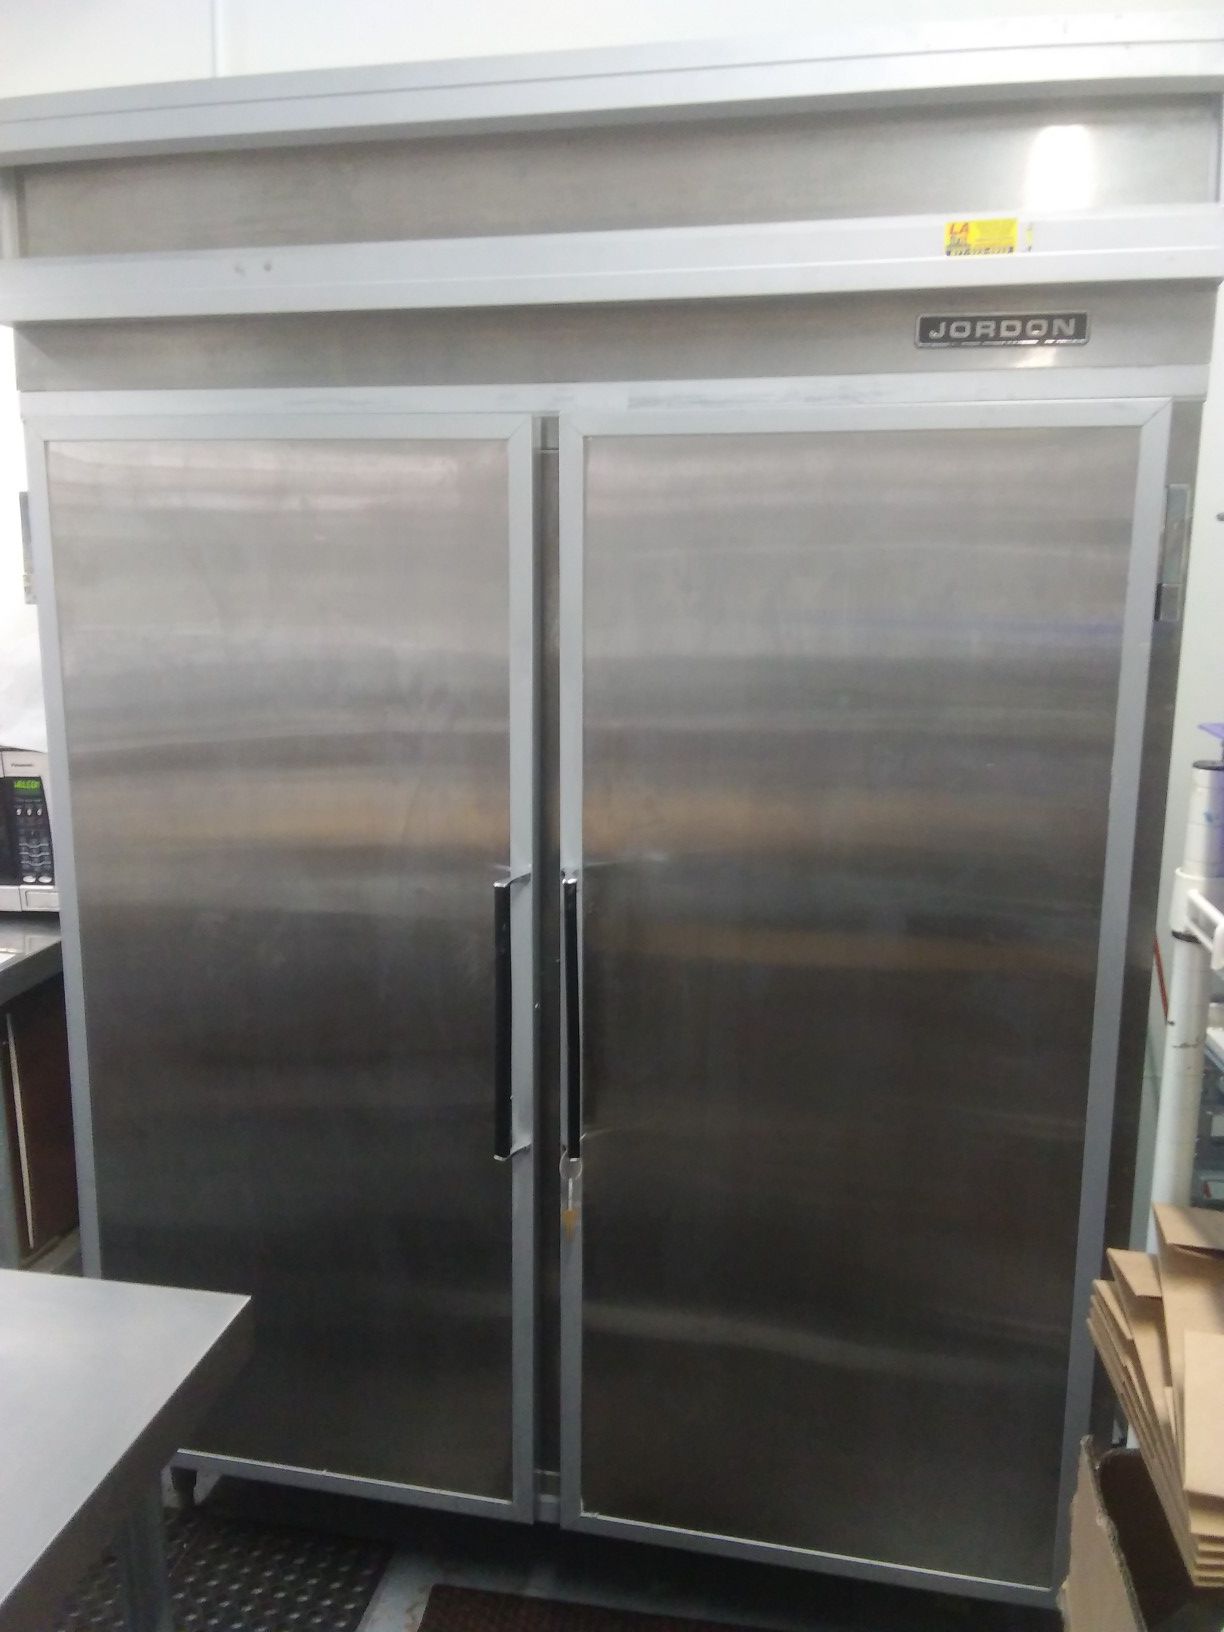 Jordan 2 door commercial freezer